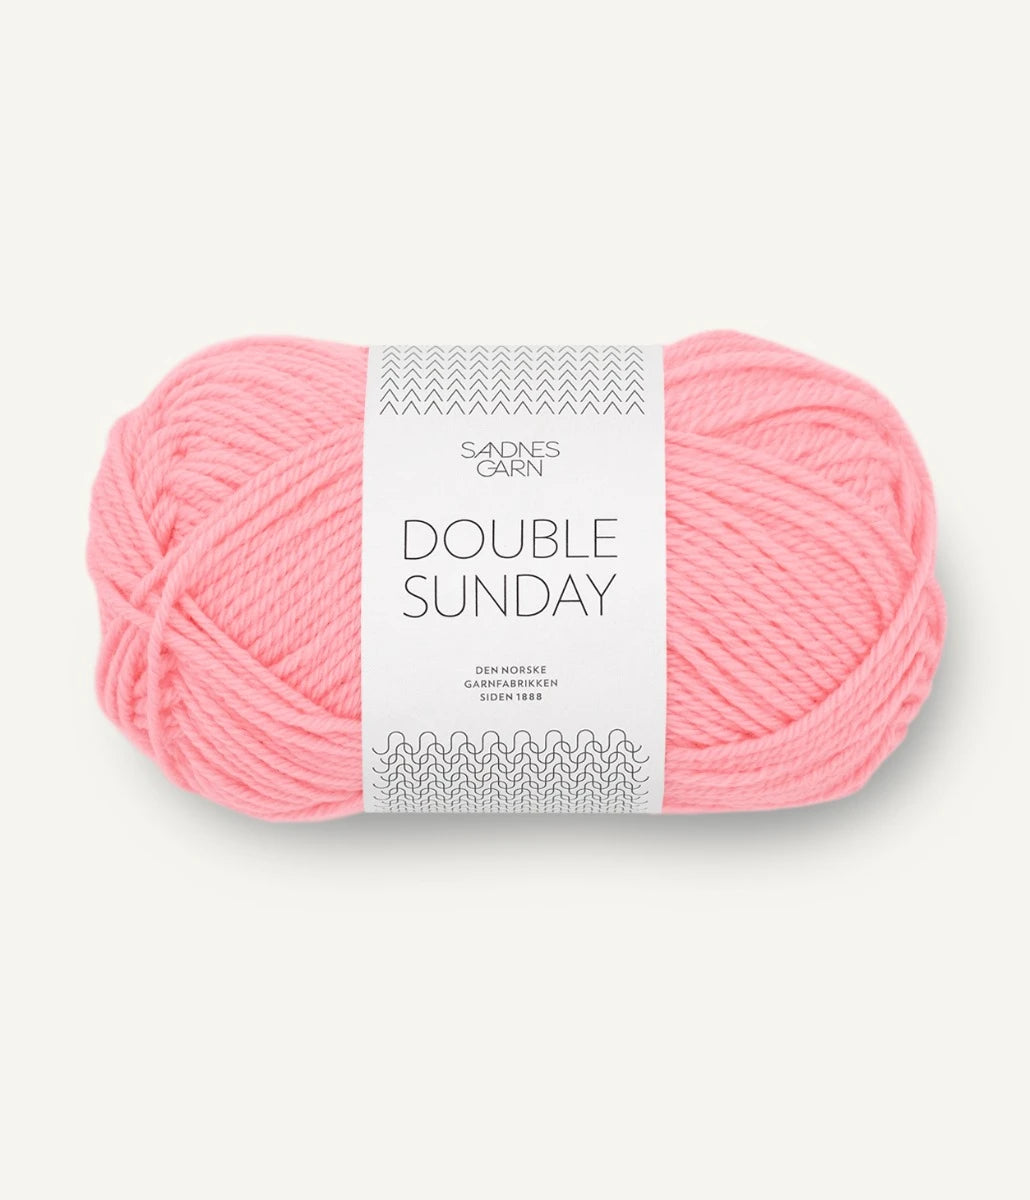 Kuvassa on Sandnes Garn Double Sunday -lanka (yarn) värissä Blossom.